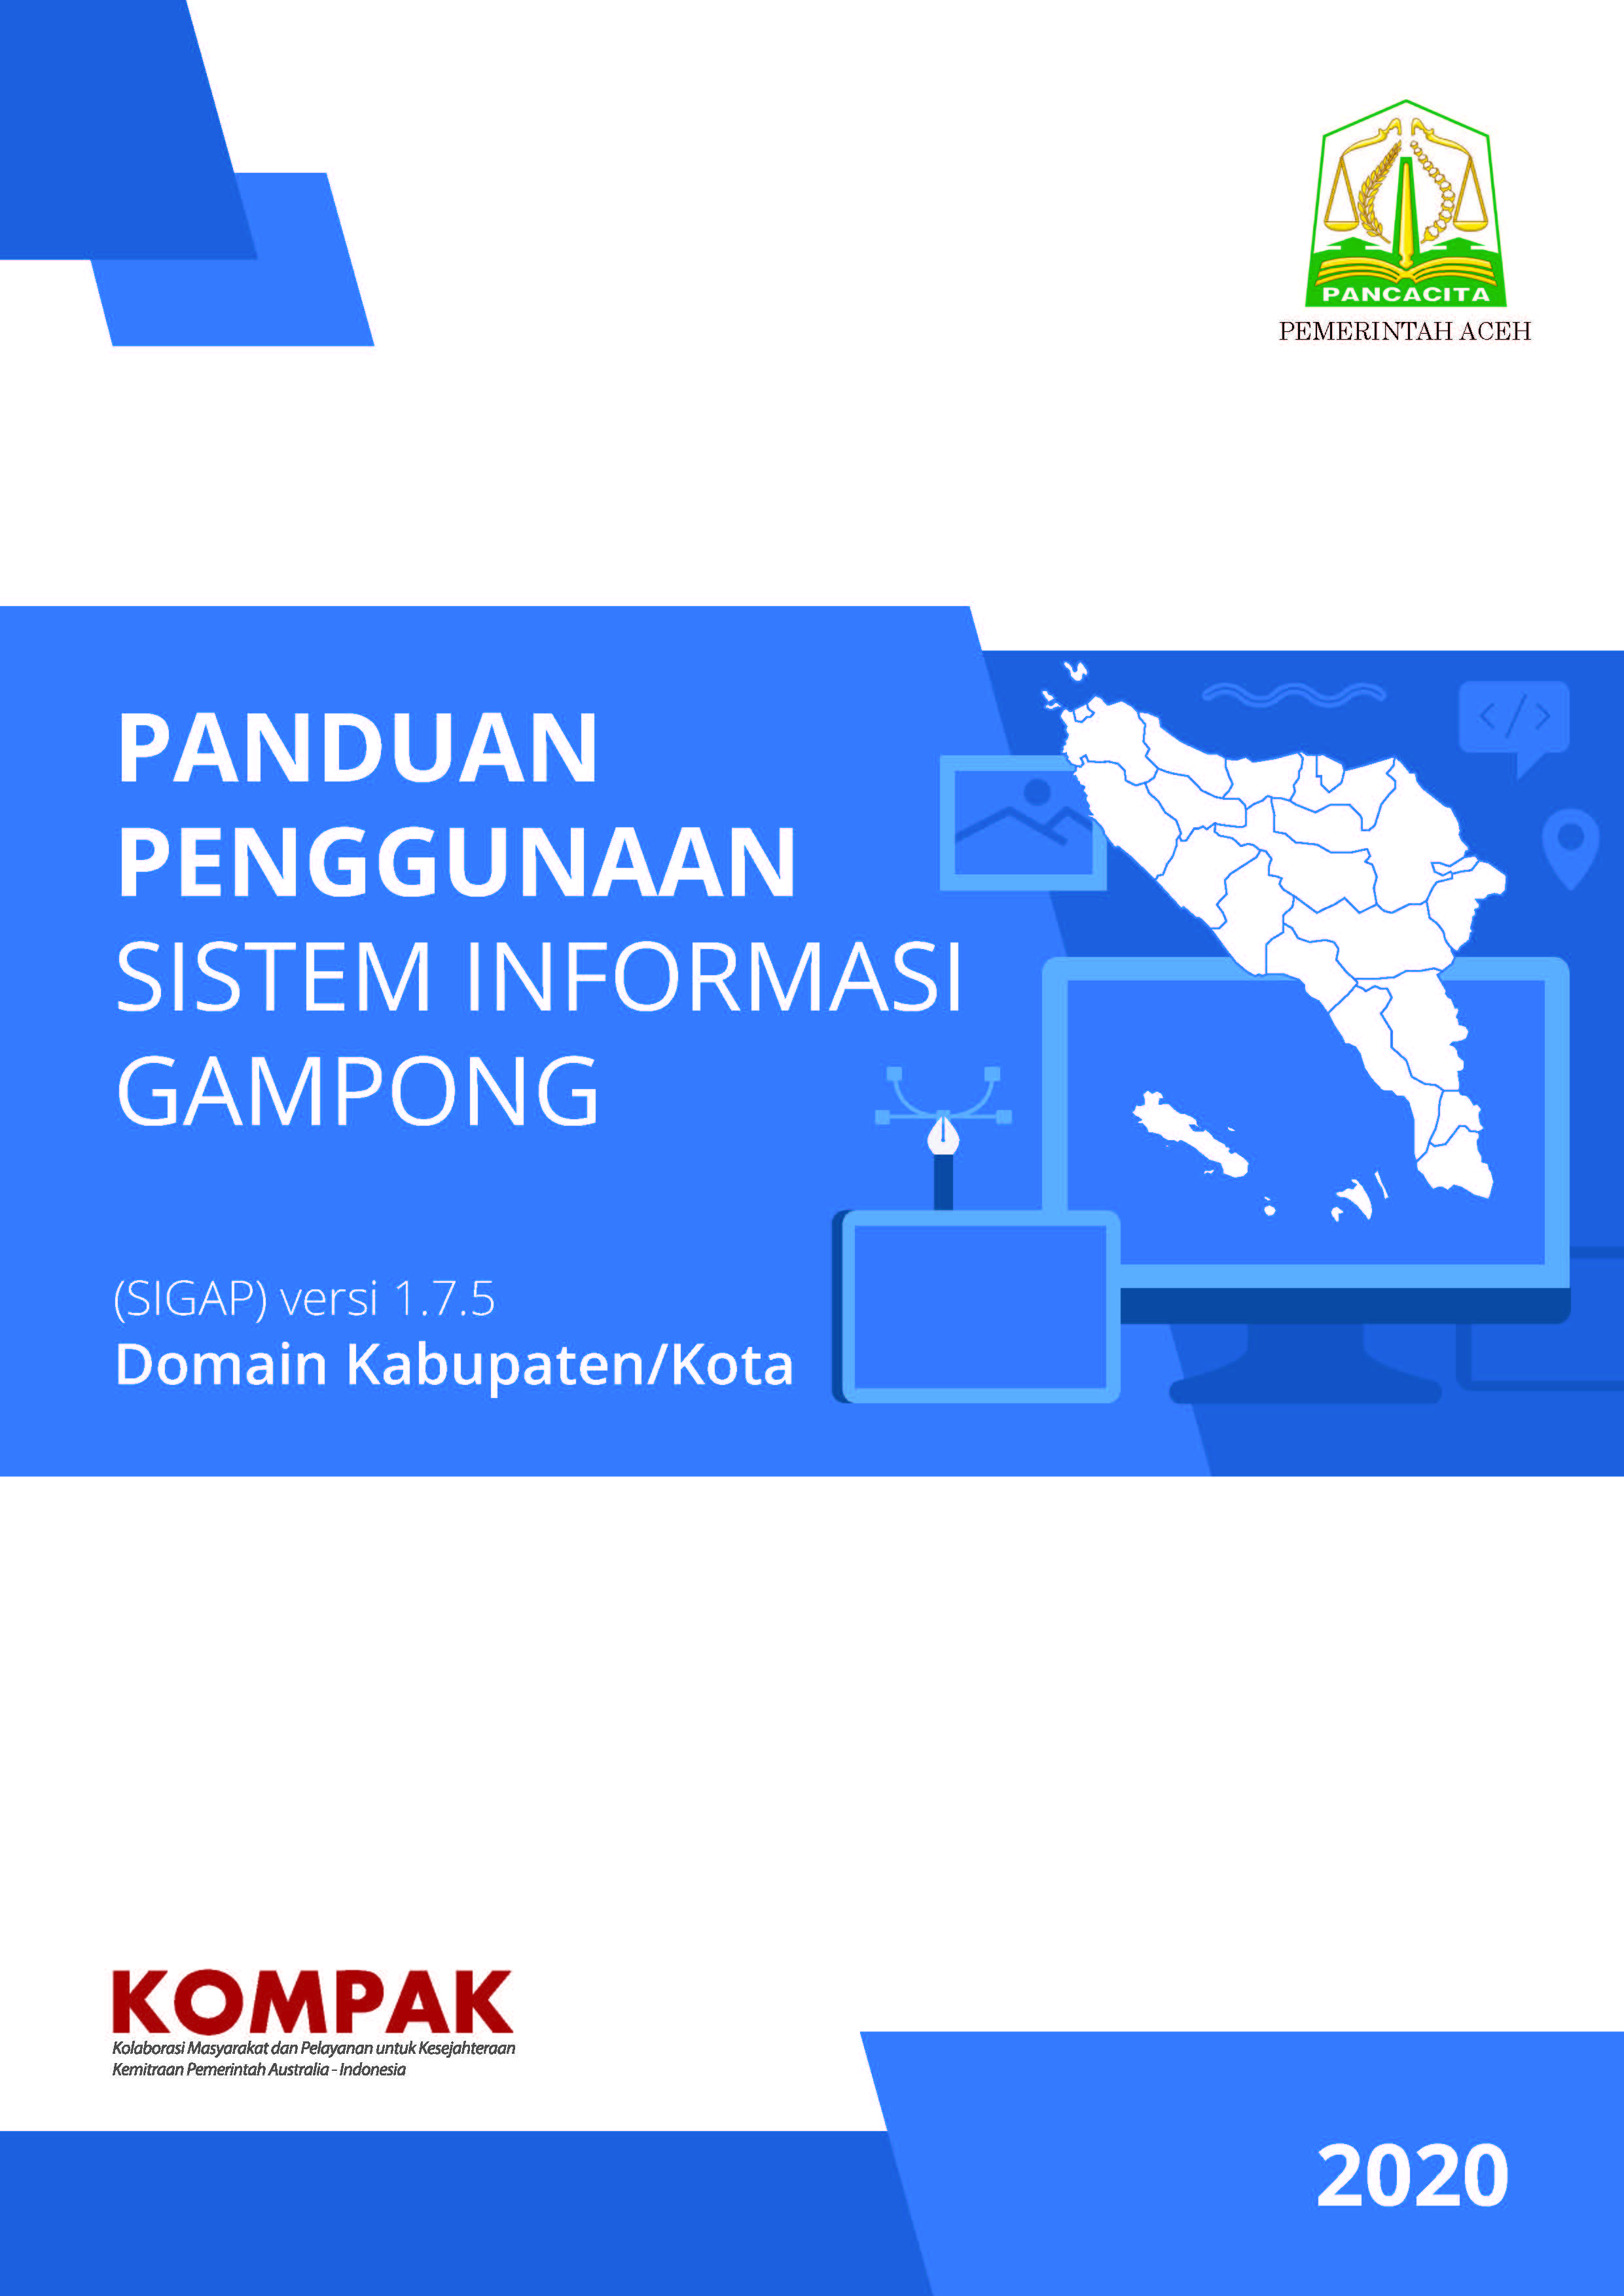 Panduan Penggunaan Sistem Informasi Gampong (SIGAP) Domain Kabupaten/Kota